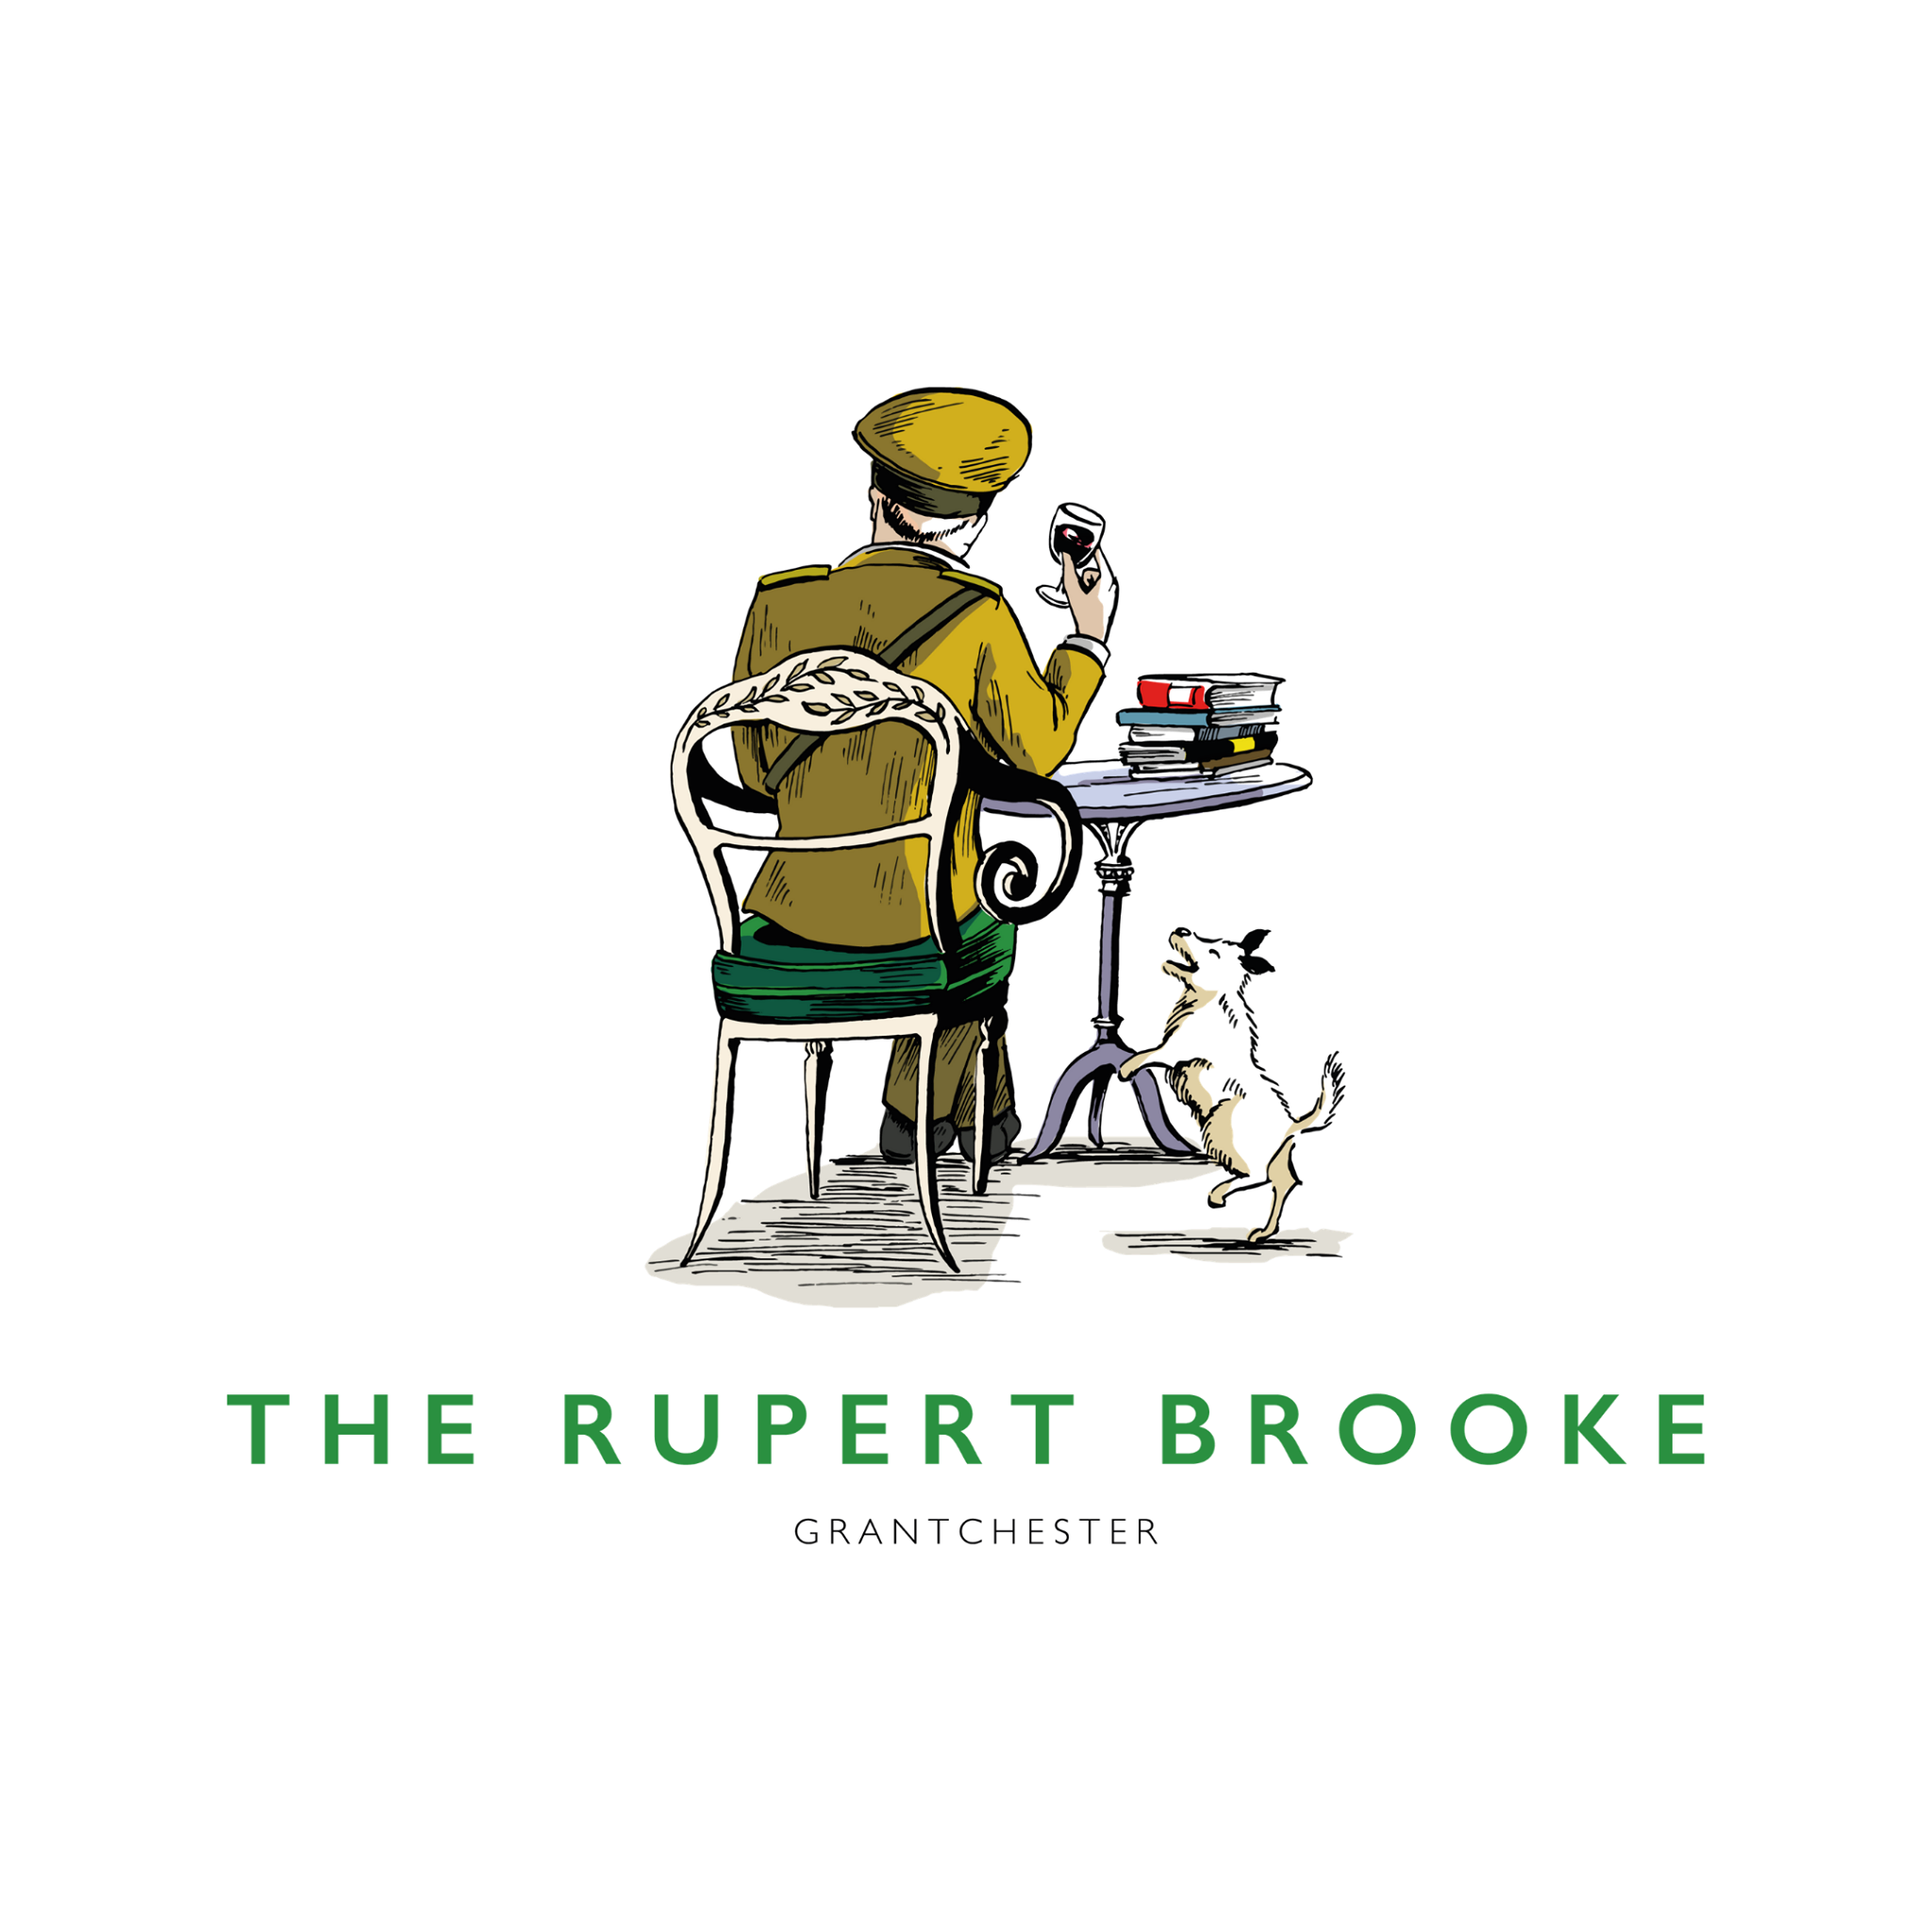 The Rupert Brooke